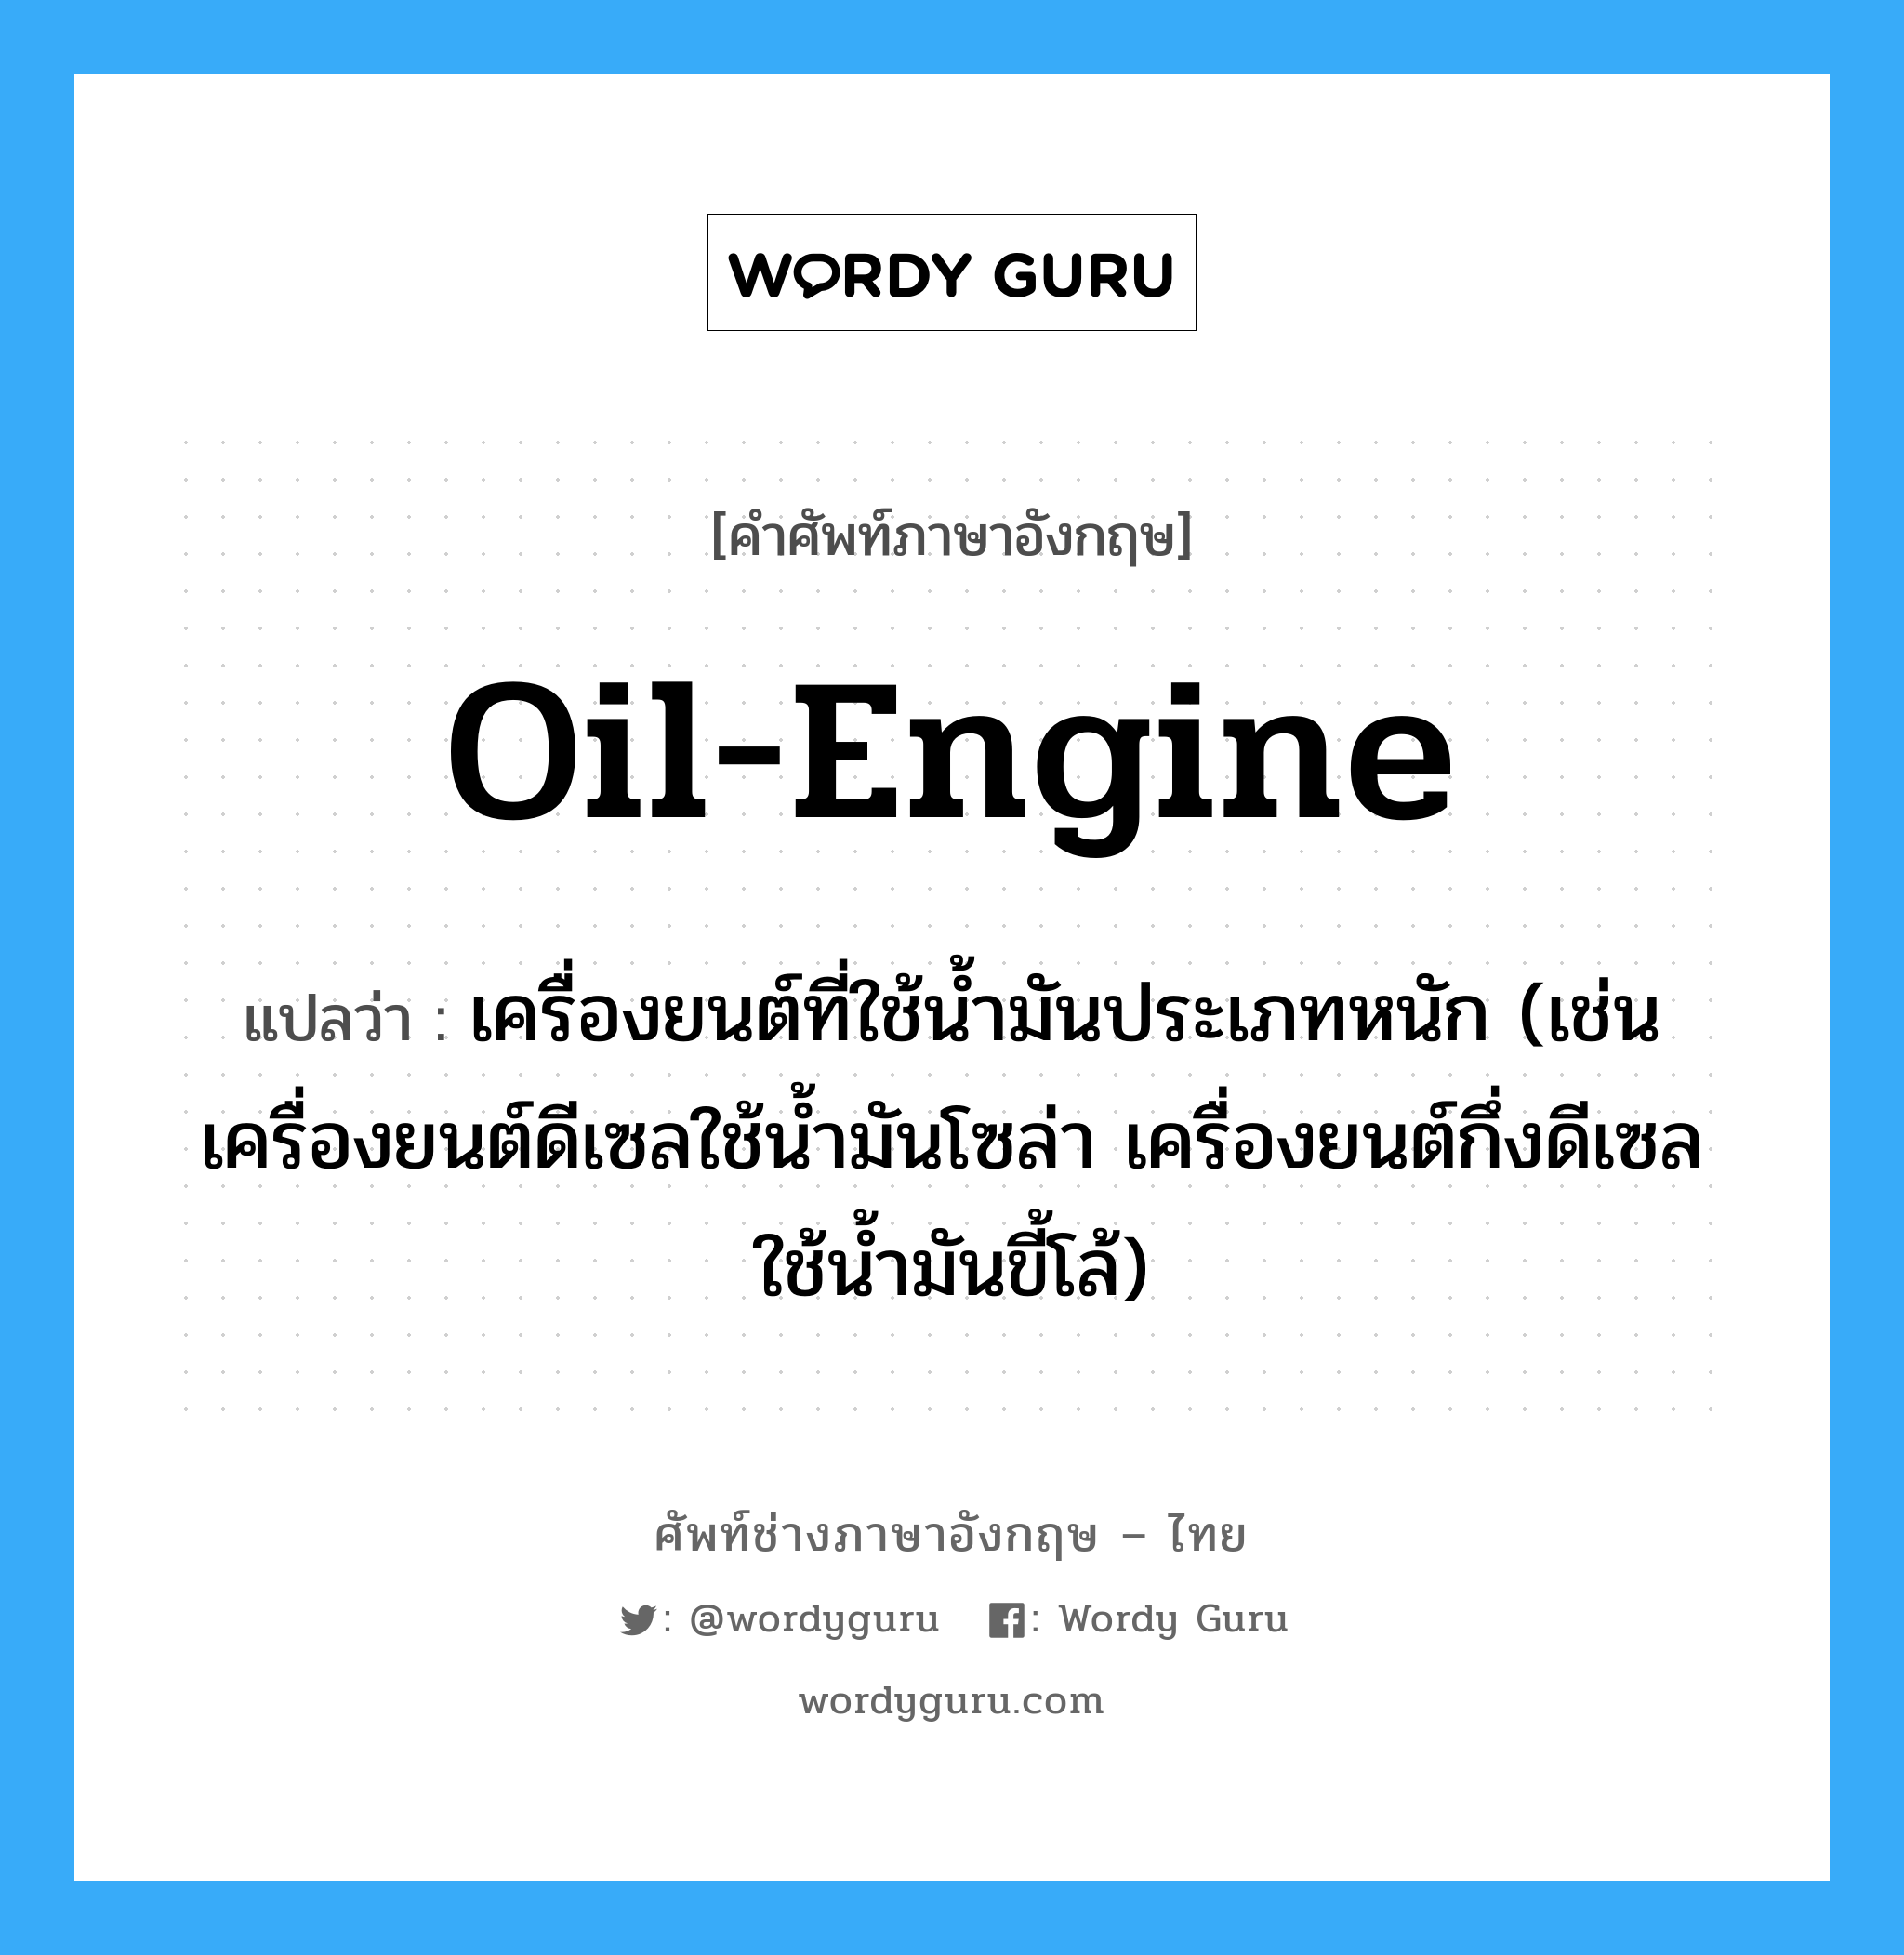 oil-engine แปลว่า?, คำศัพท์ช่างภาษาอังกฤษ - ไทย oil-engine คำศัพท์ภาษาอังกฤษ oil-engine แปลว่า เครื่องยนต์ที่ใช้น้ำมันประเภทหนัก (เช่น เครื่องยนต์ดีเซลใช้น้ำมันโซล่า เครื่องยนต์กึ่งดีเซลใช้น้ำมันขี้โล้)